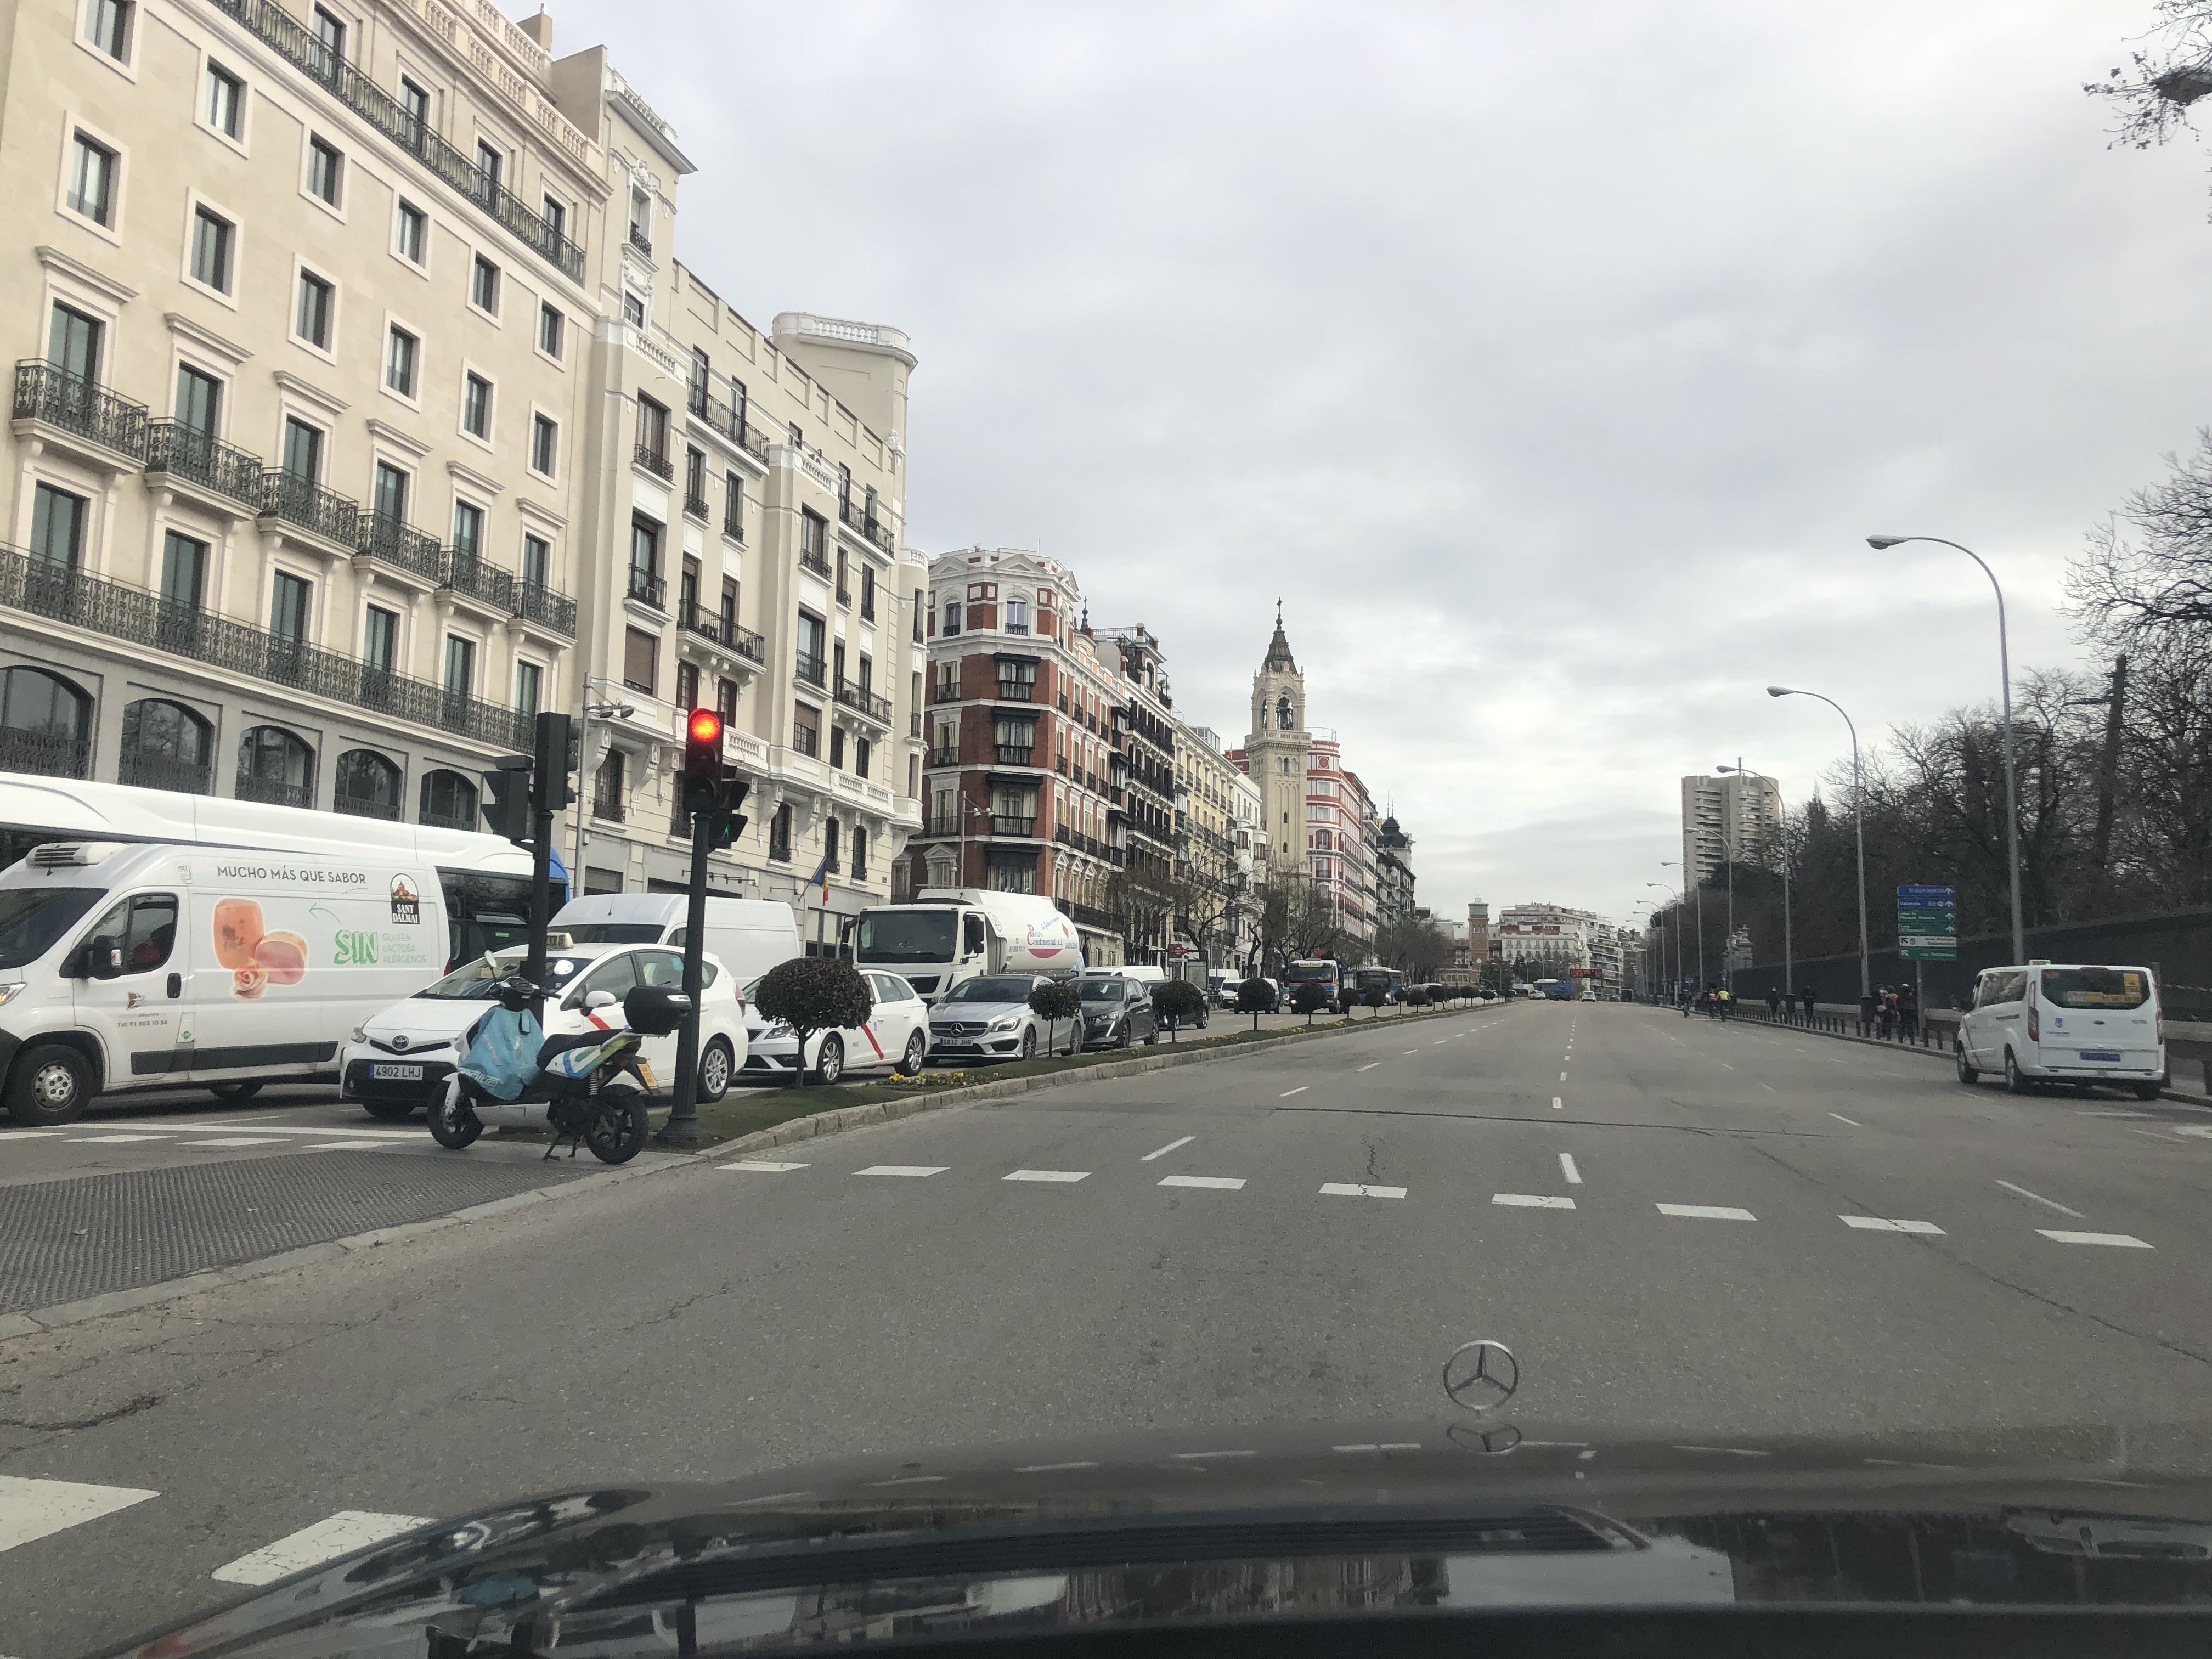 Servicio de combustible a domicilio en Madrid